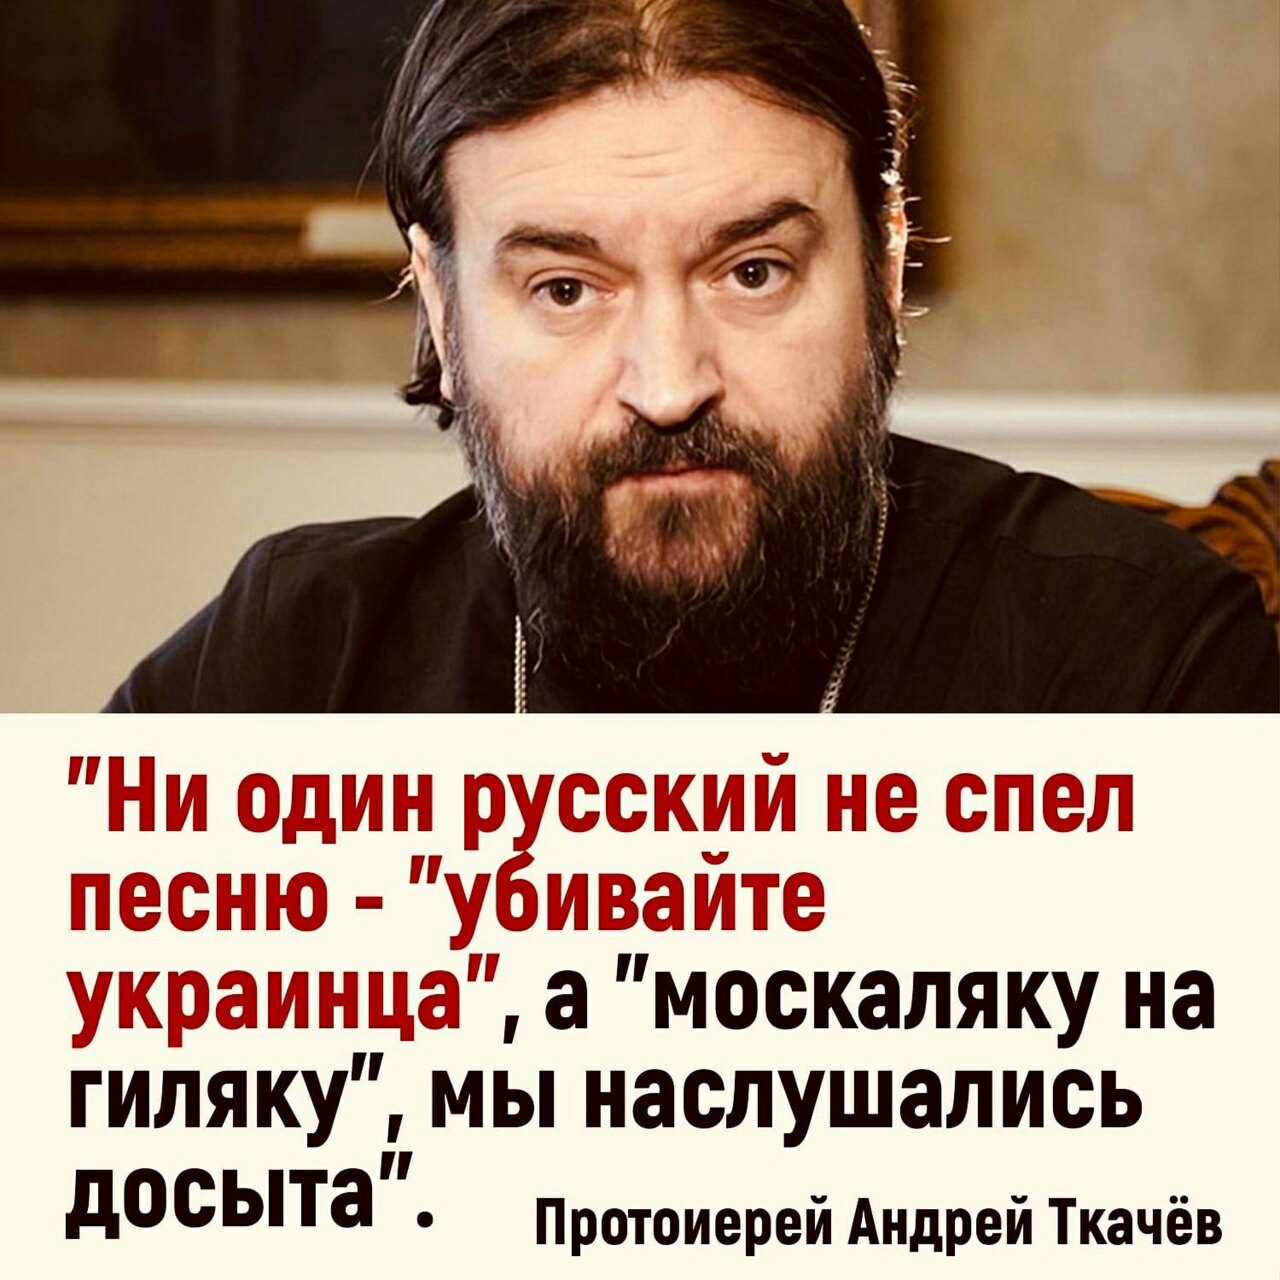 Протоиерей Андрей Ткачев:Война не началась, она заканчивается. А кто не знал, что она началась и давно идёт, тот - просто сволочь